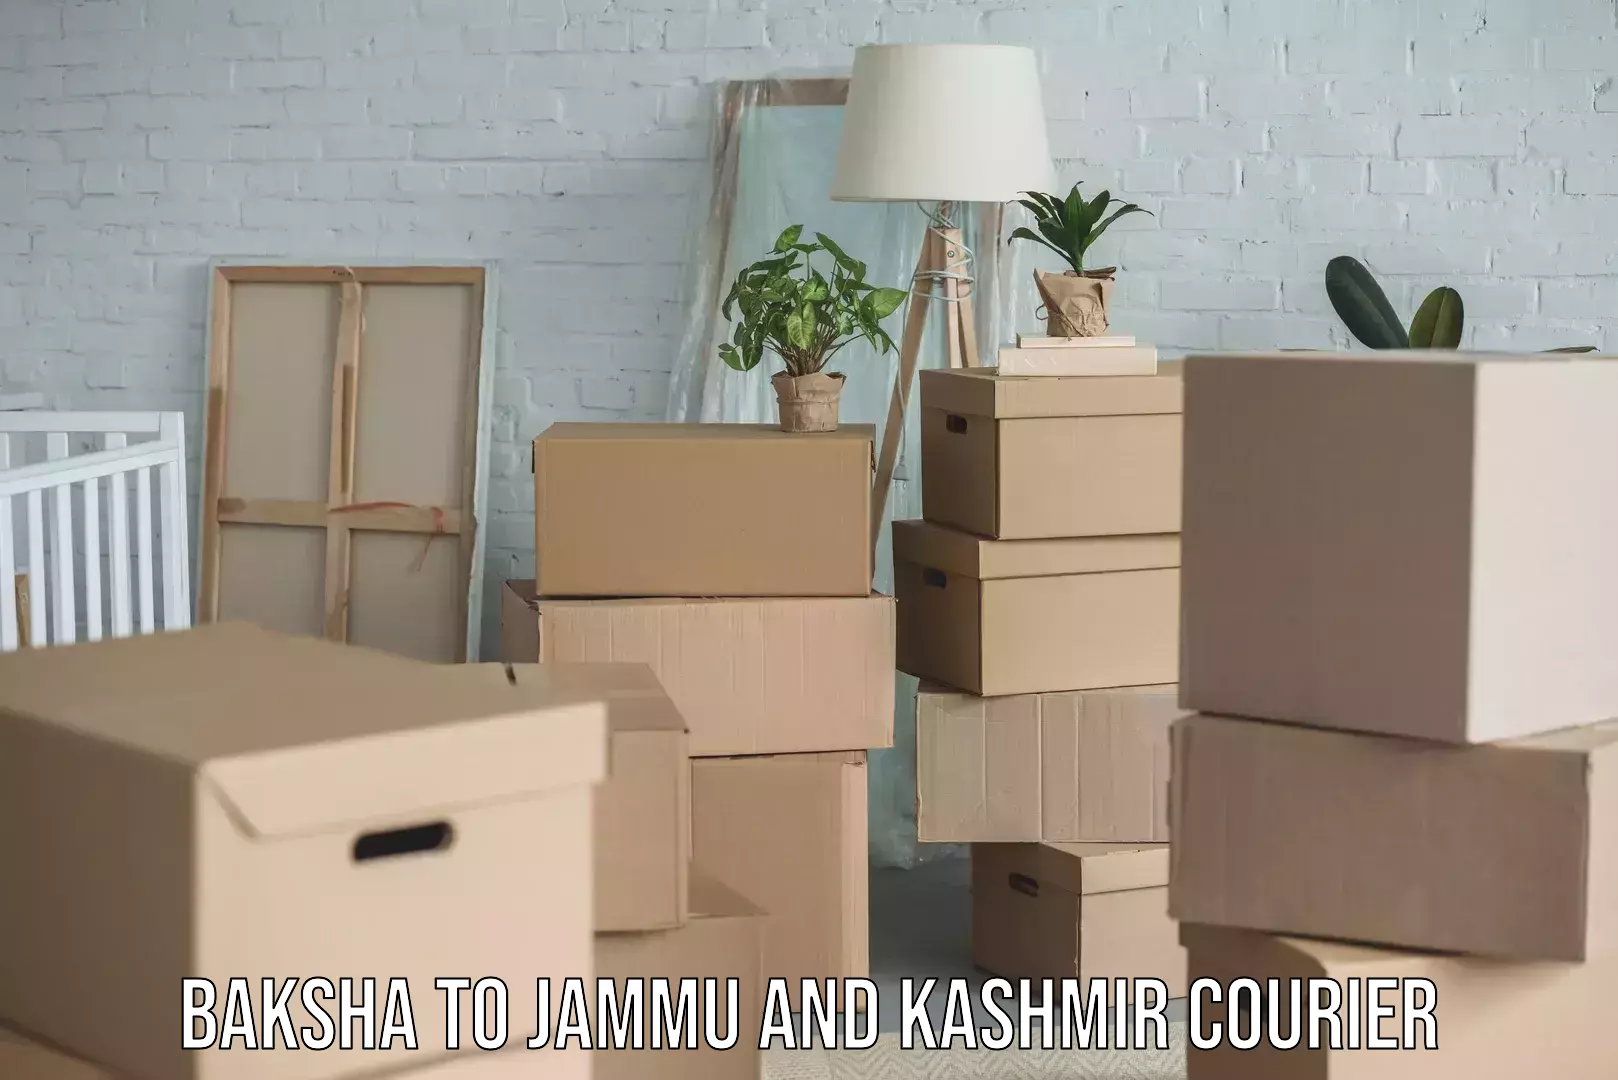 Cash on delivery service Baksha to Jammu and Kashmir